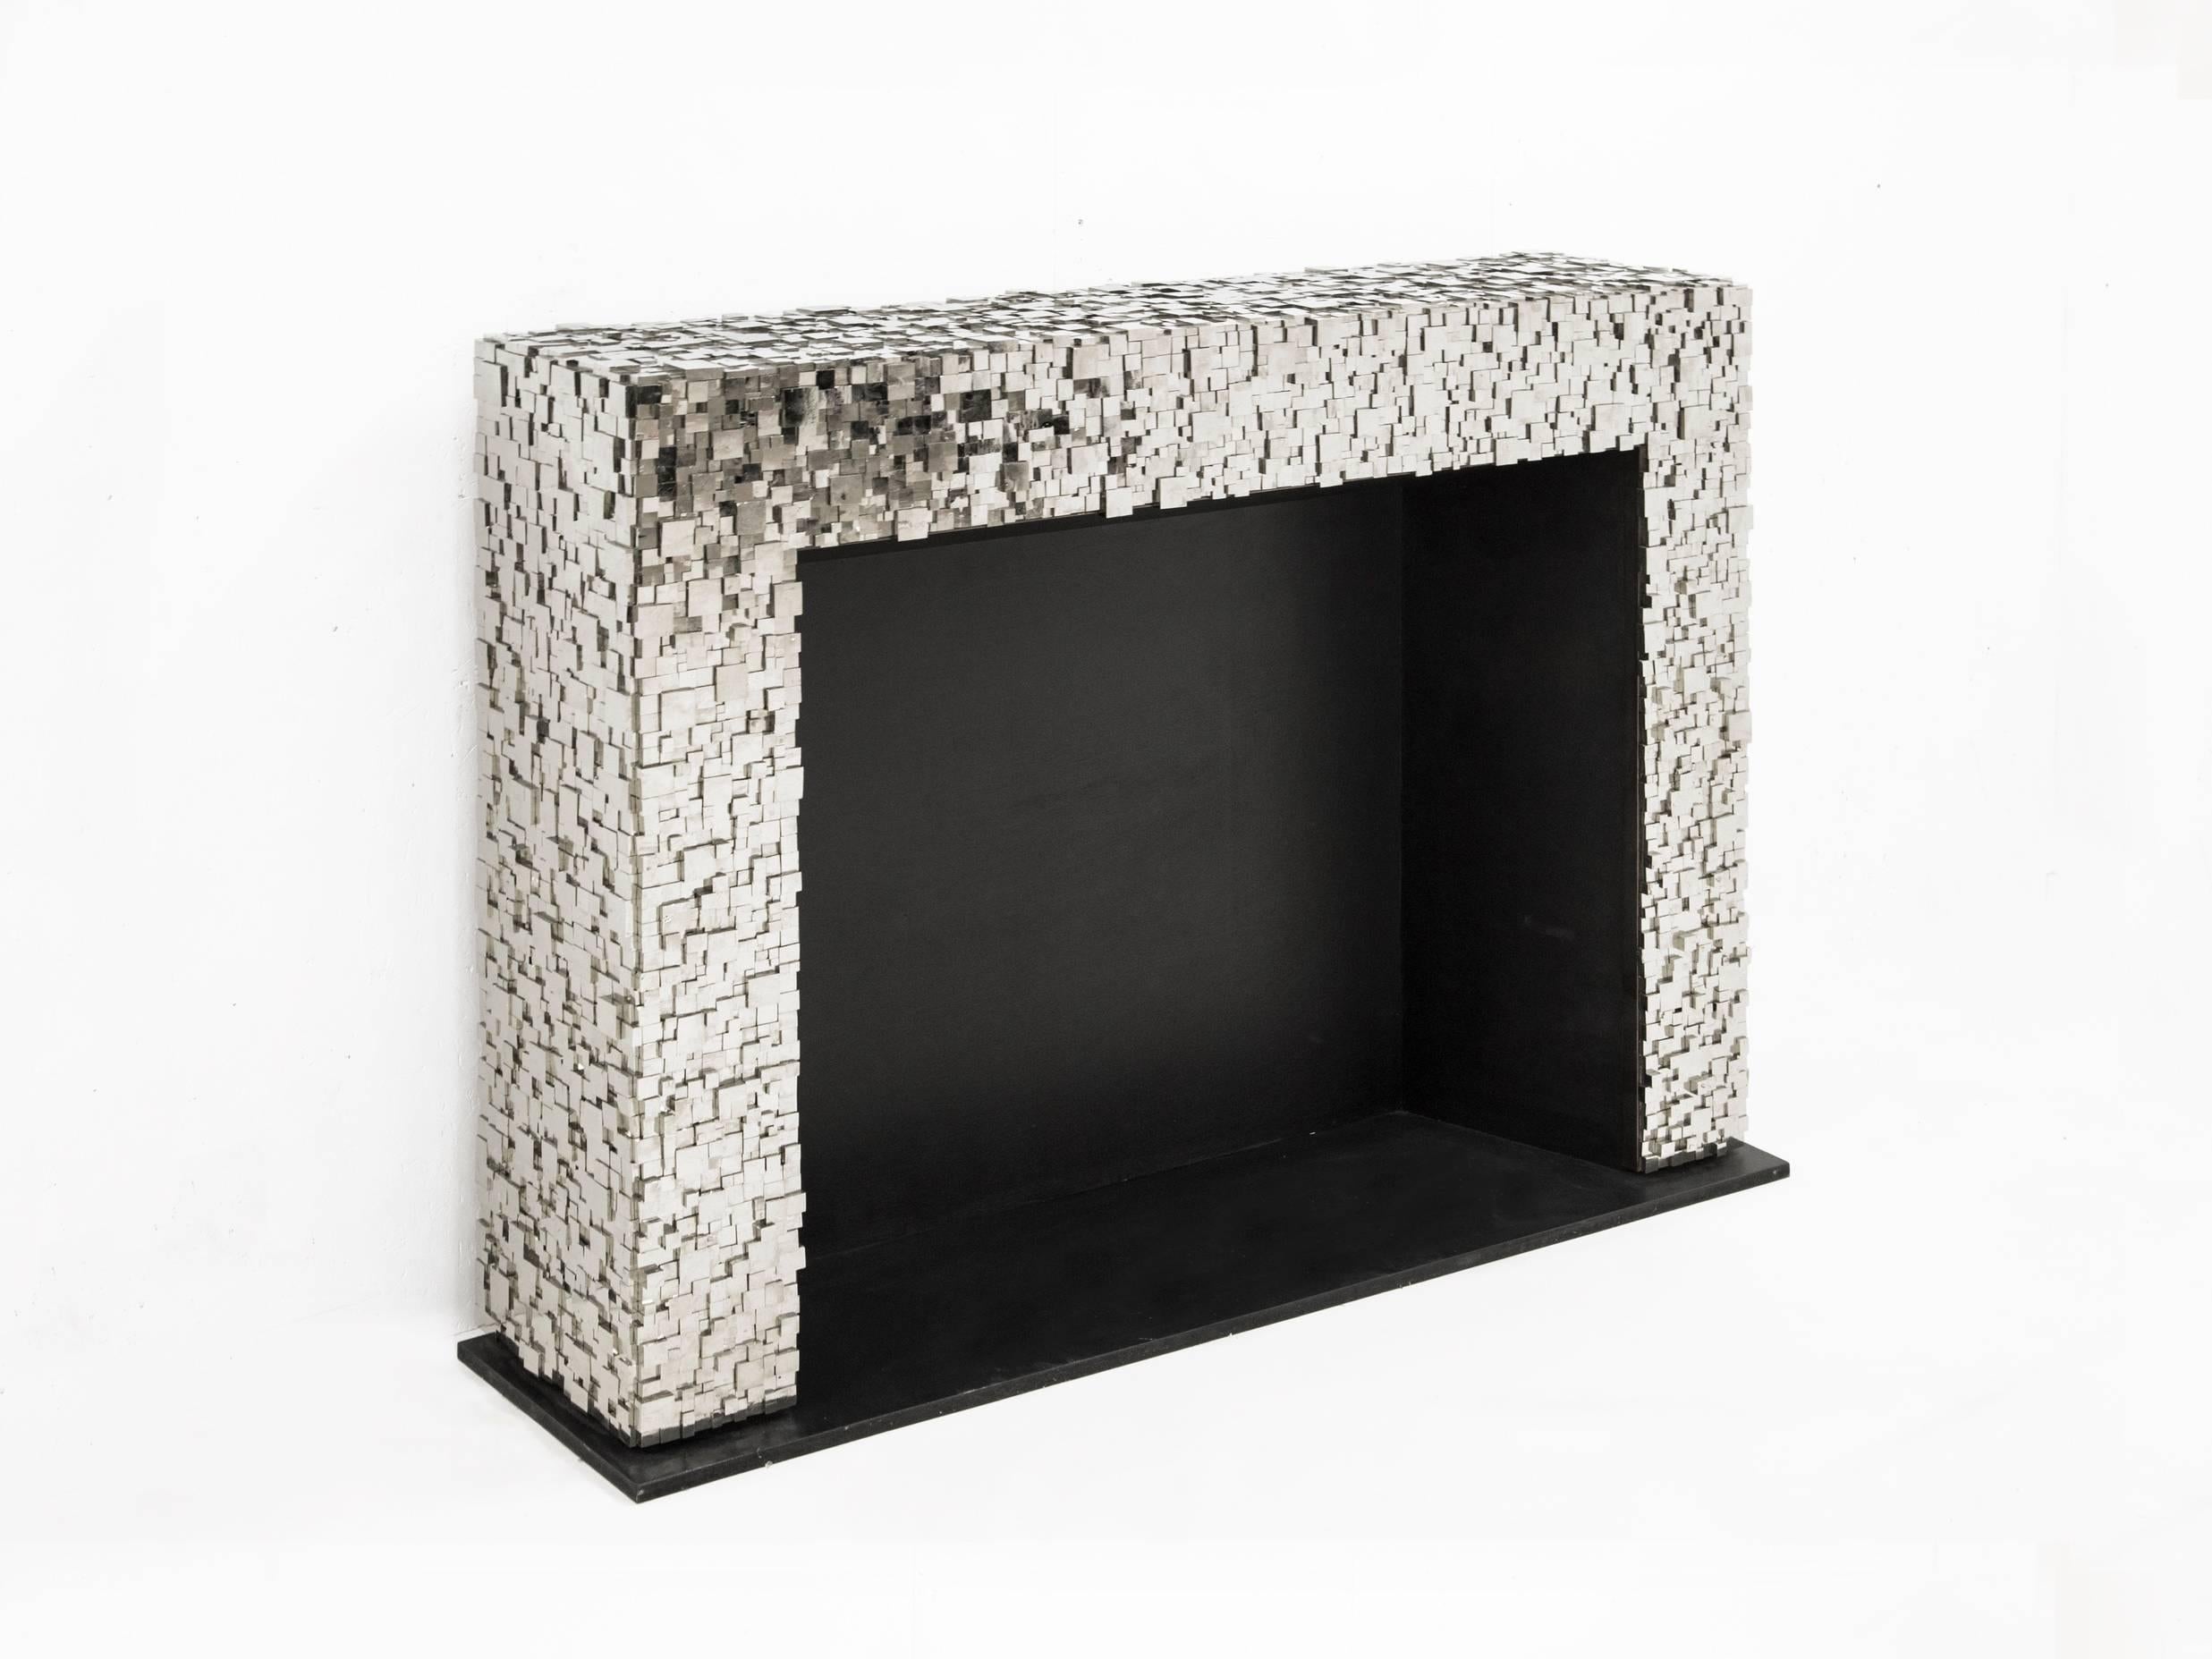 Kam Tin
Fire place
Cubic pyrite, wood.
Measures: H 110 x W 146 x D 30 cm
France, 2018.